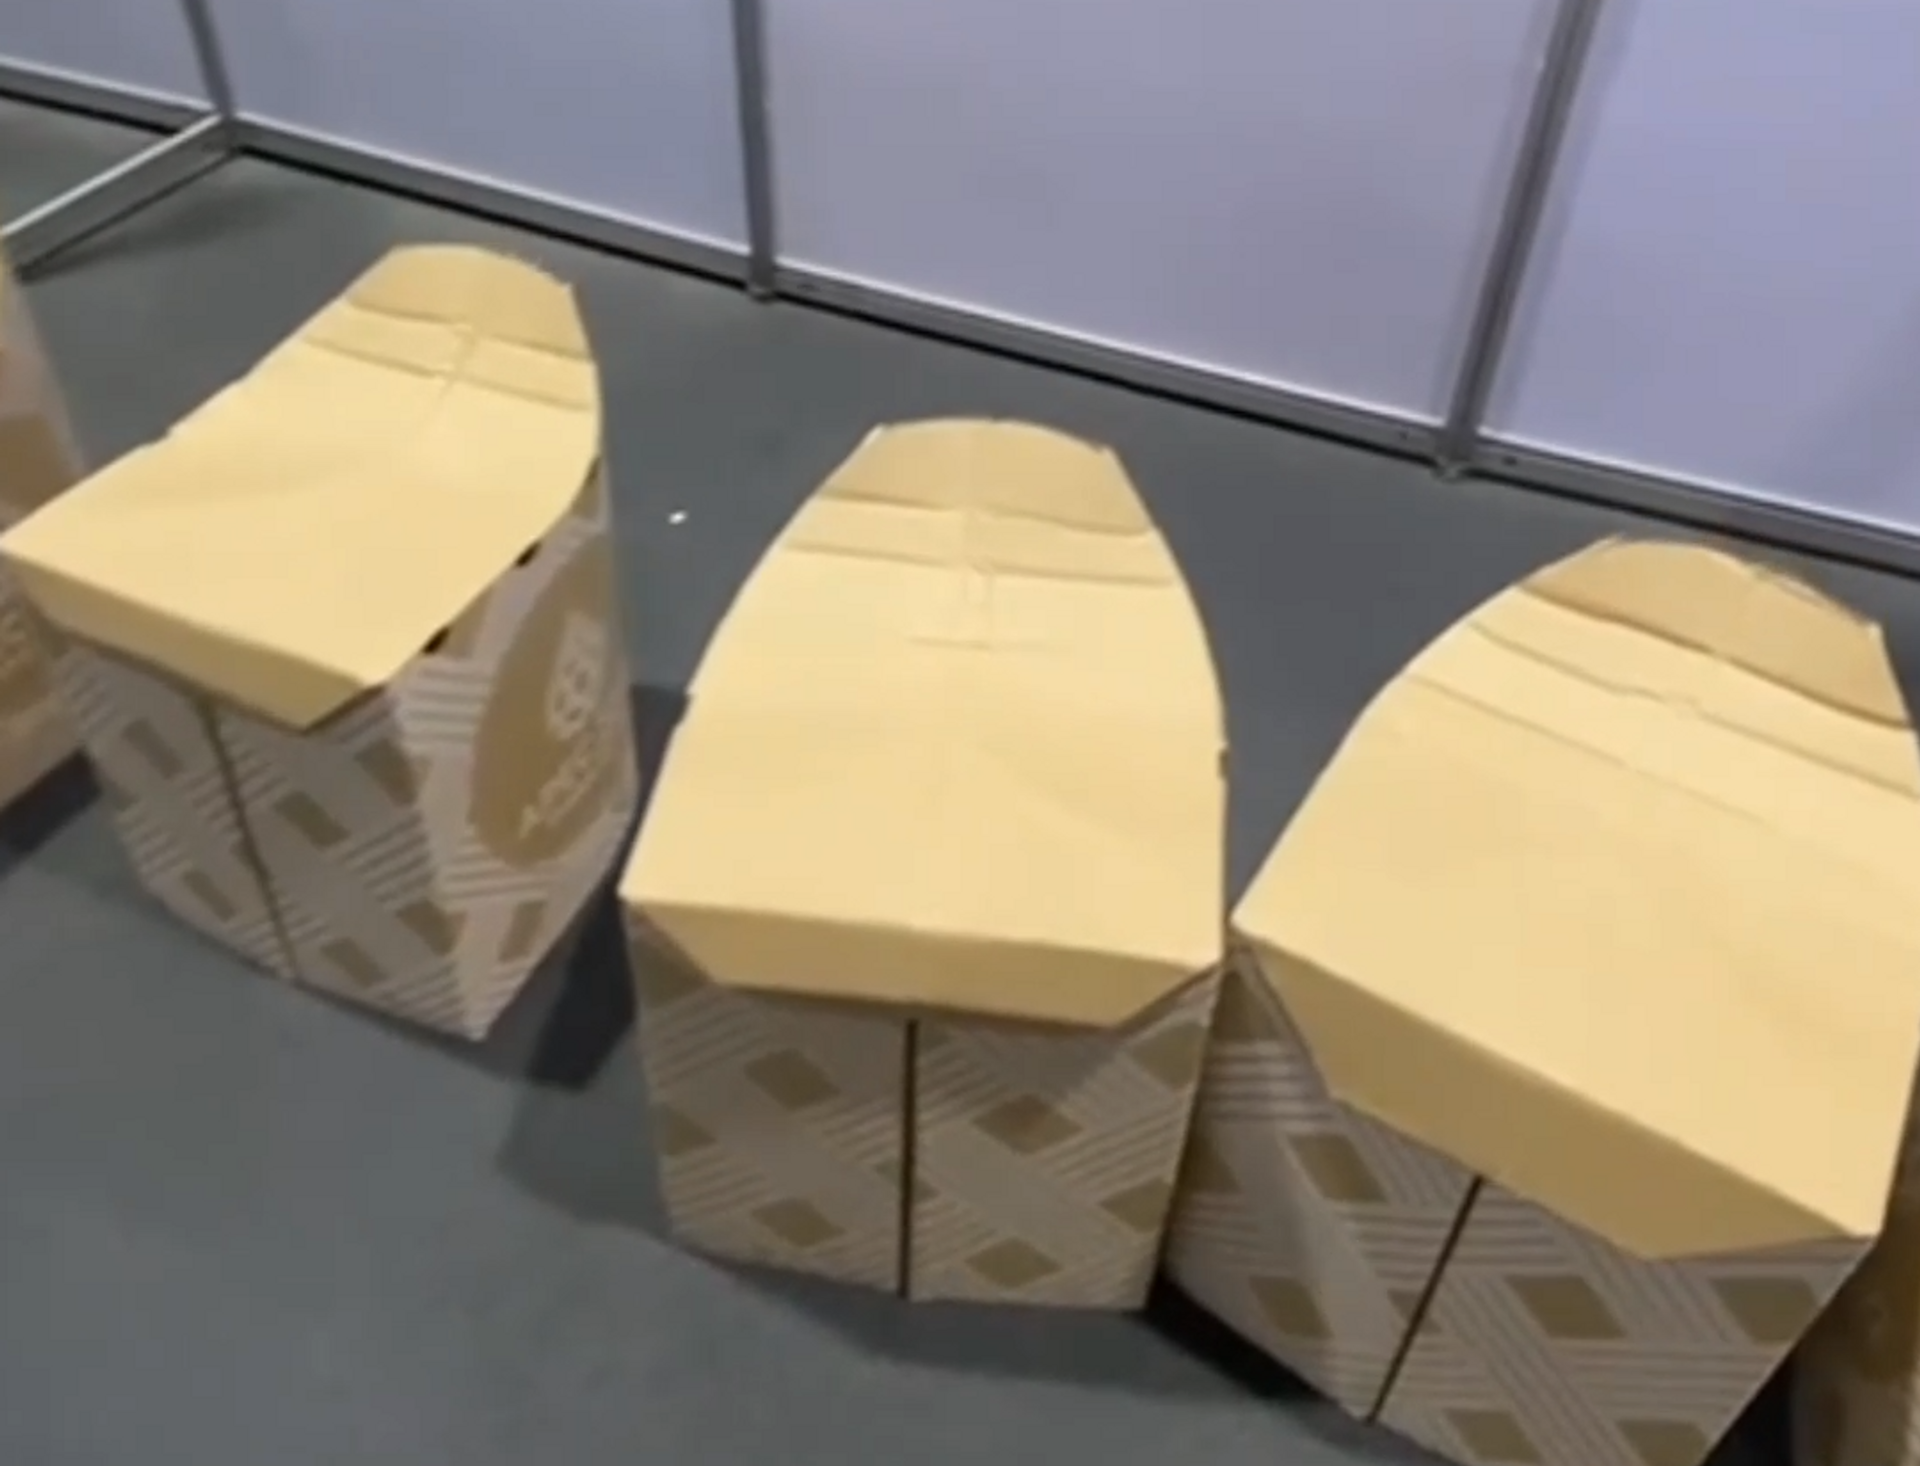 На саммите АТЭС расставили экологичные картонные столы и стулья